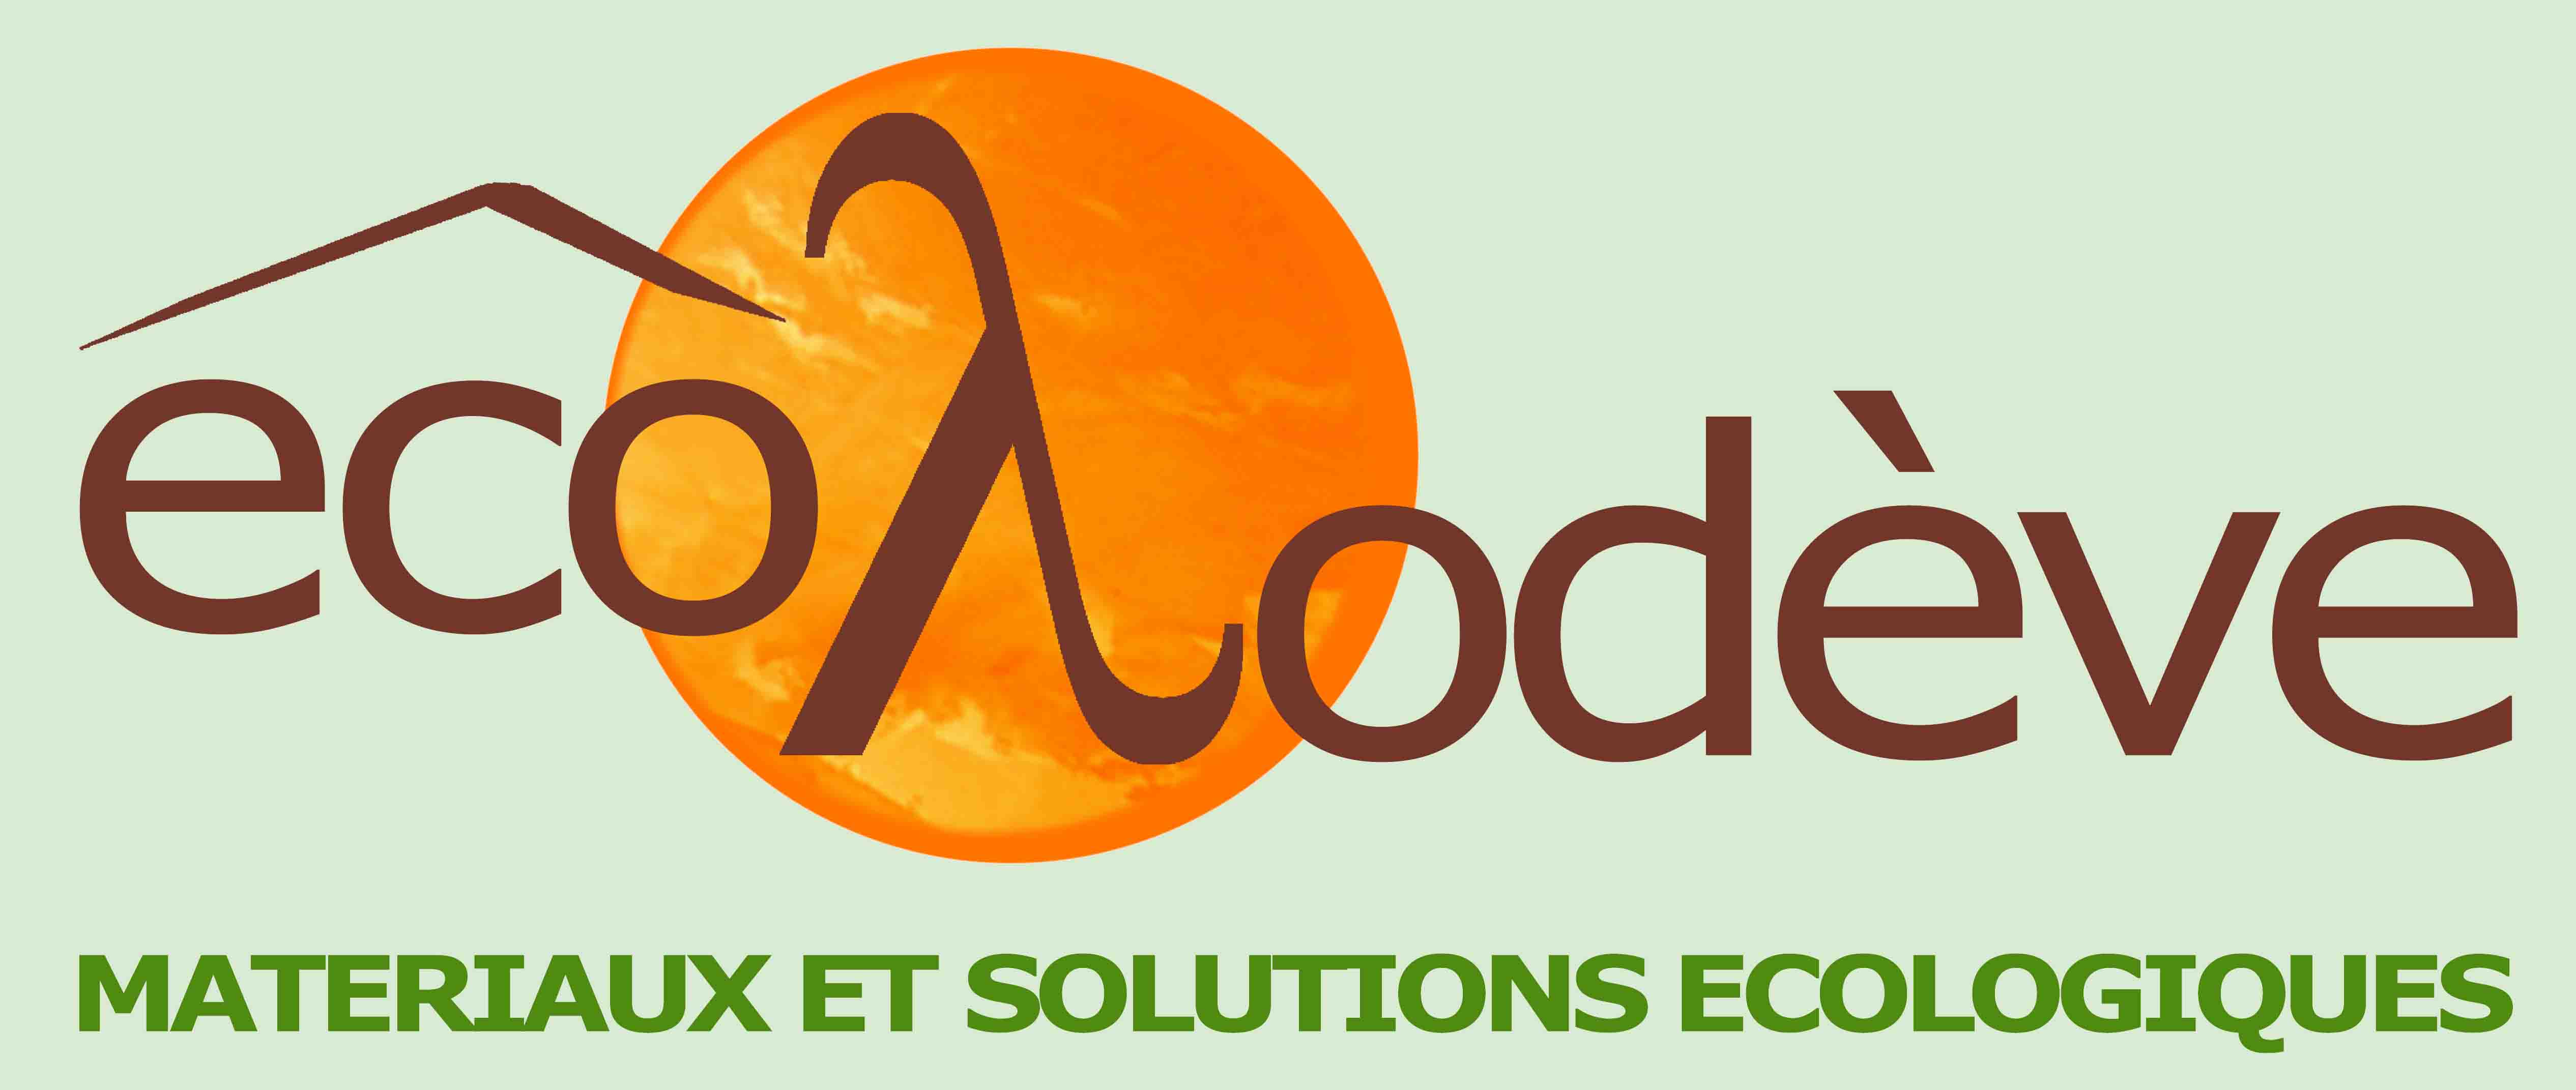 image logo_ecolodve_fond_vert.jpg (0.2MB)
Lien vers: https://www.ecolodeve.fr/contact.html